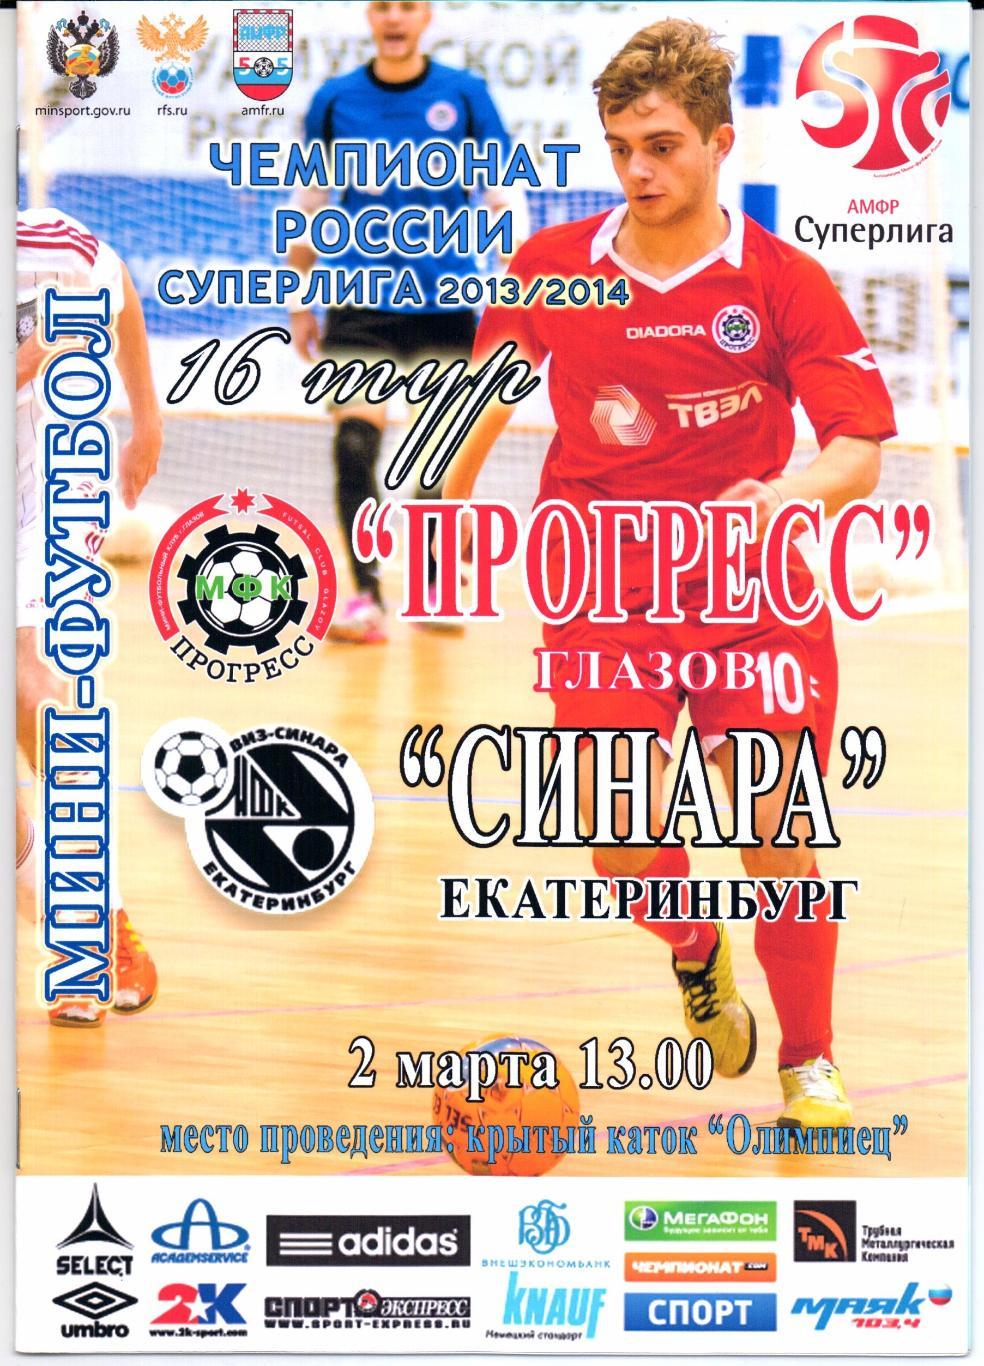 Мини-футбол Суперлига Прогресс(Глазов)-Синара(Екат еринбург)02.03.2014